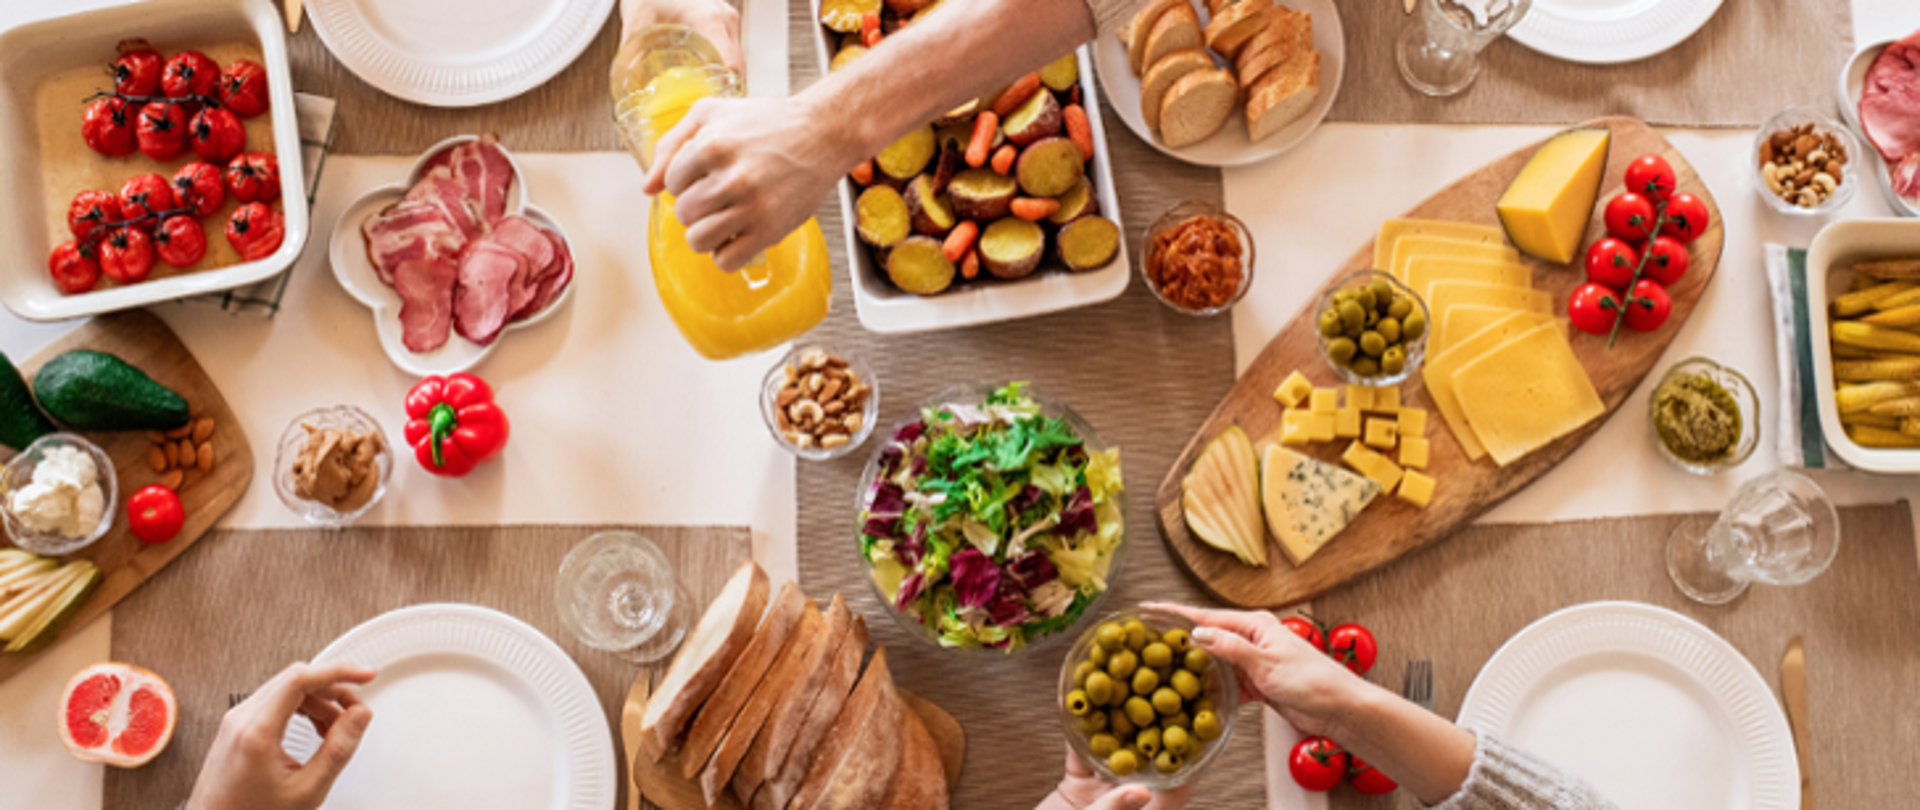 Zdjęcie przedstawiające widok stołu z produktami spożywczymi (owoce, warzywa, sery, pieczywo)